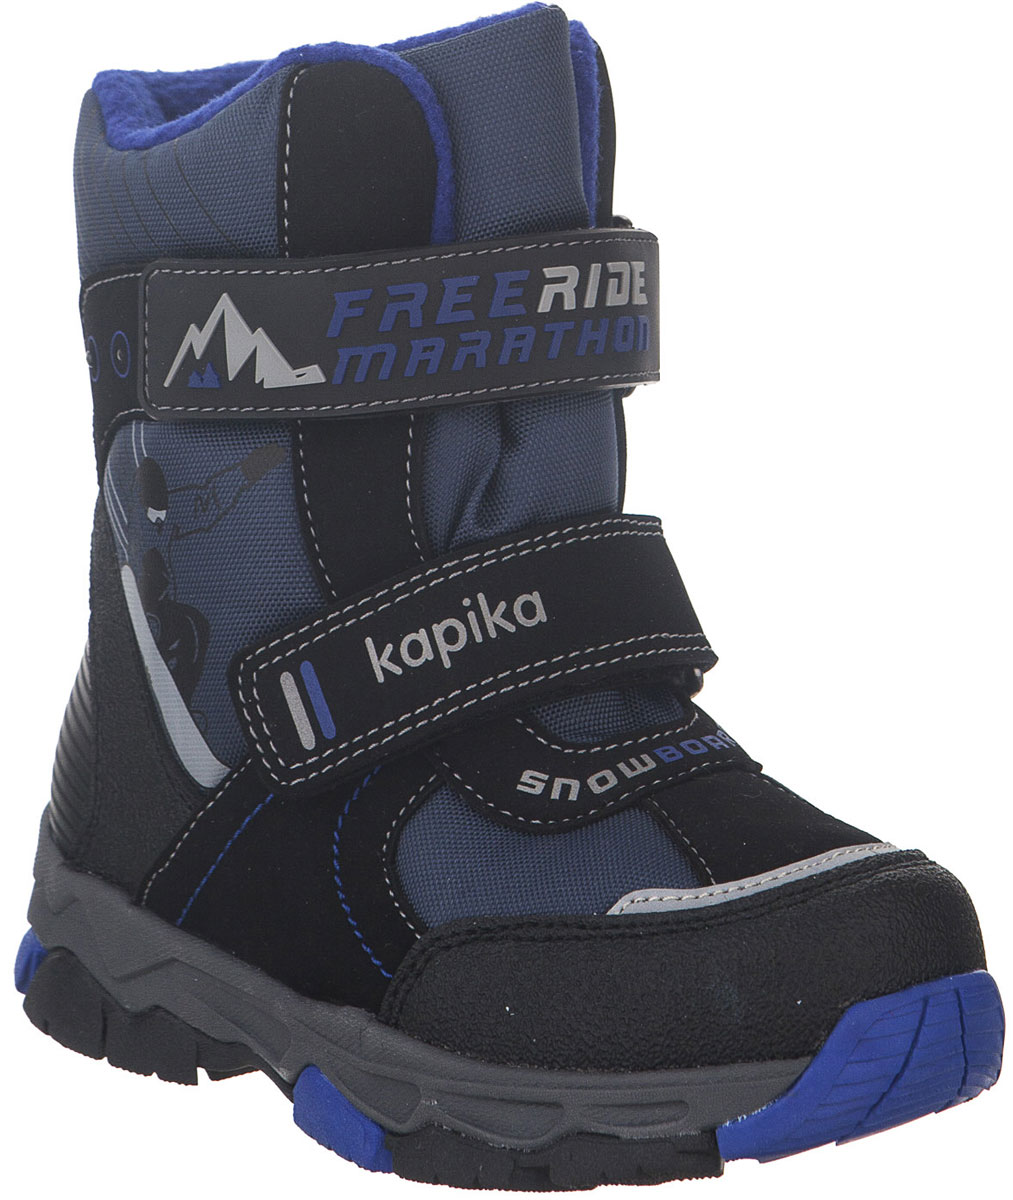 Ботинки для мальчика Kapika, цвет: черный, синий. 42219-1. Размер 32